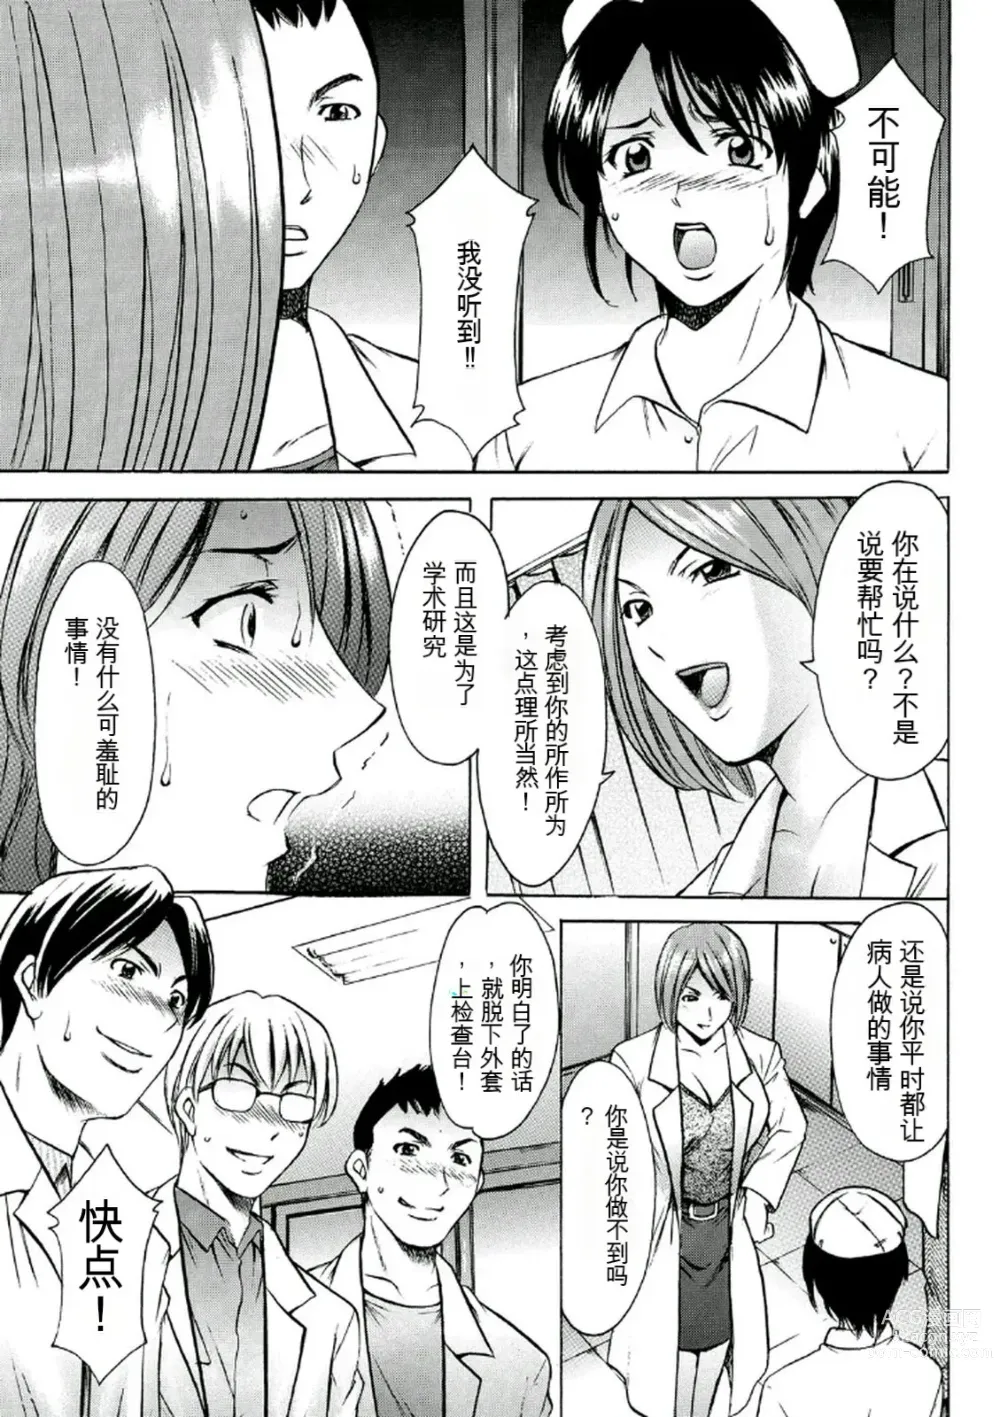 Page 29 of manga Chijoku Byoutou -Hakui no Datenshi-